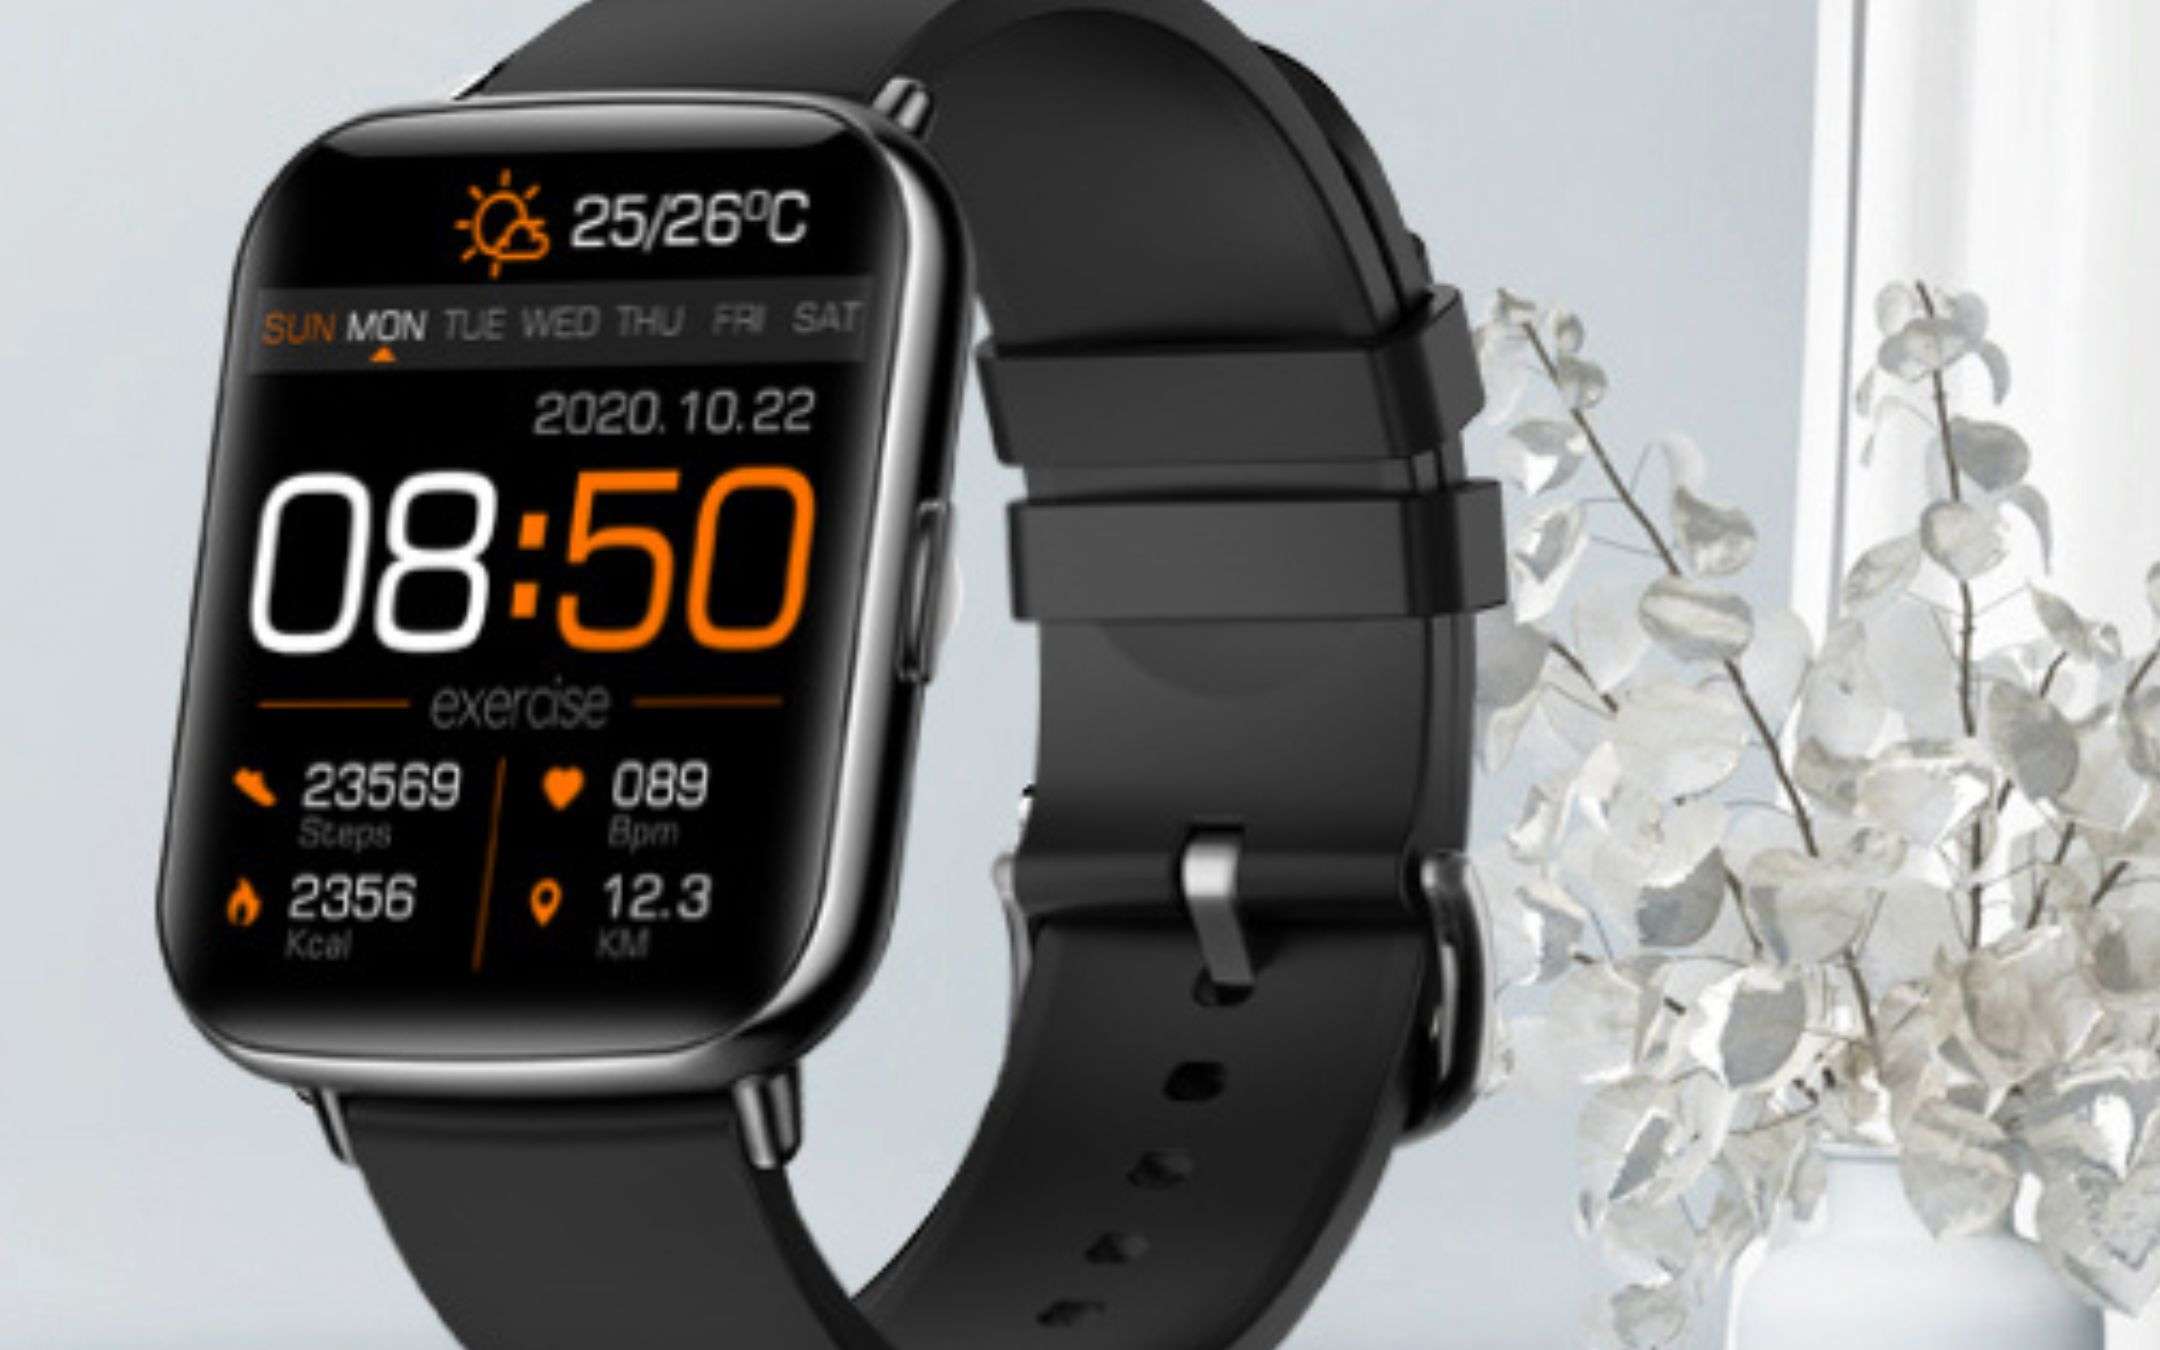 Bastano 19€ per lo smartwatch che NON ti aspetti: sconto 60% (Amazon)